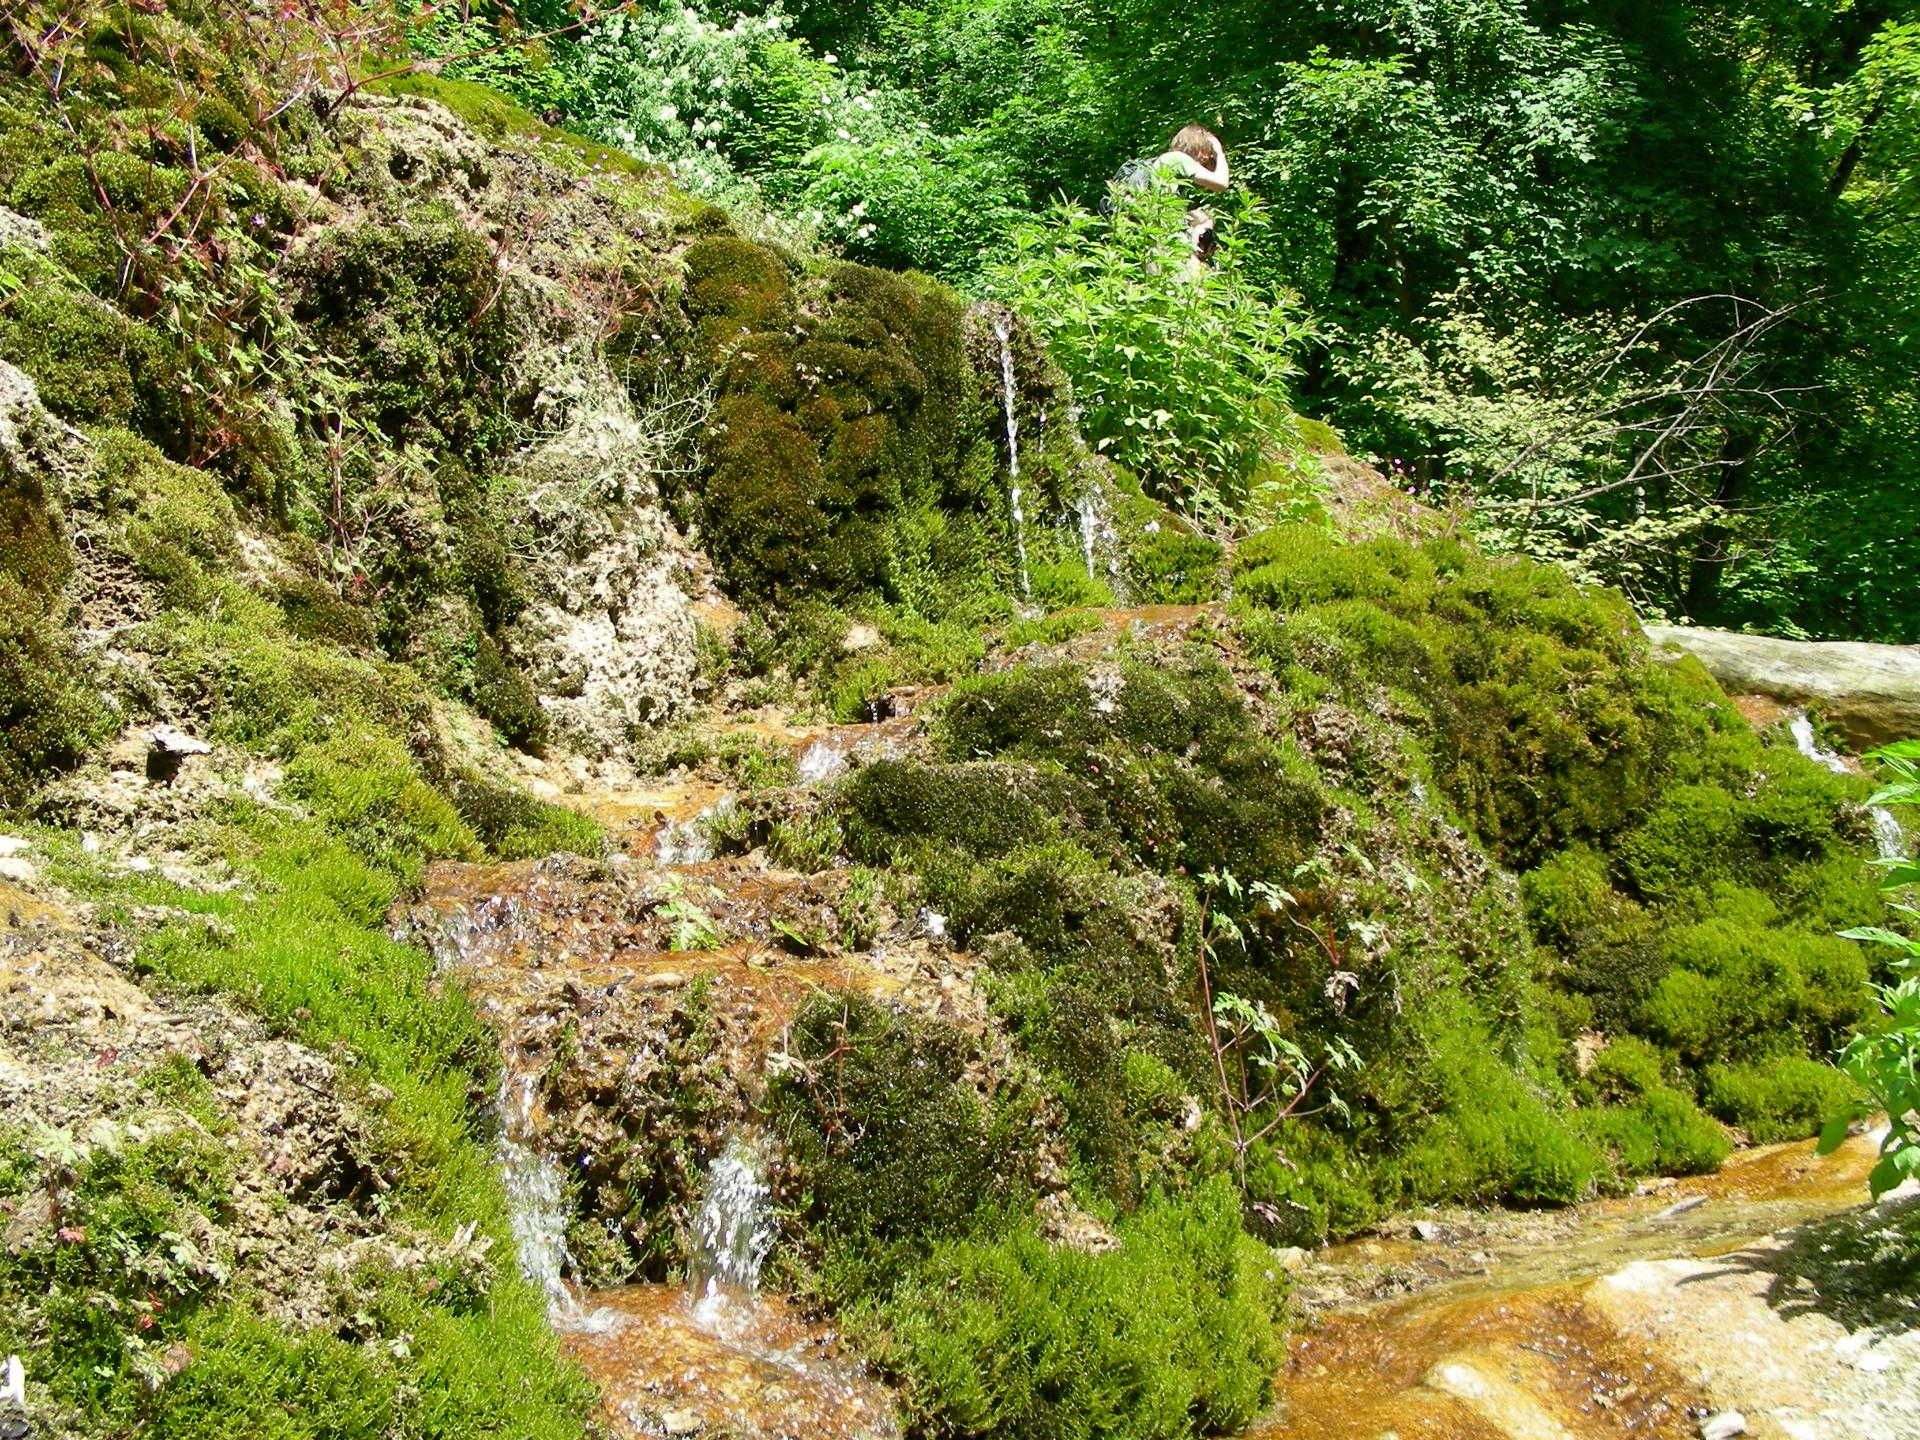 Am Fuße des unteren Wasserfalls: Nahaufnahme des mit Moos bewachsenen Tuffsteins